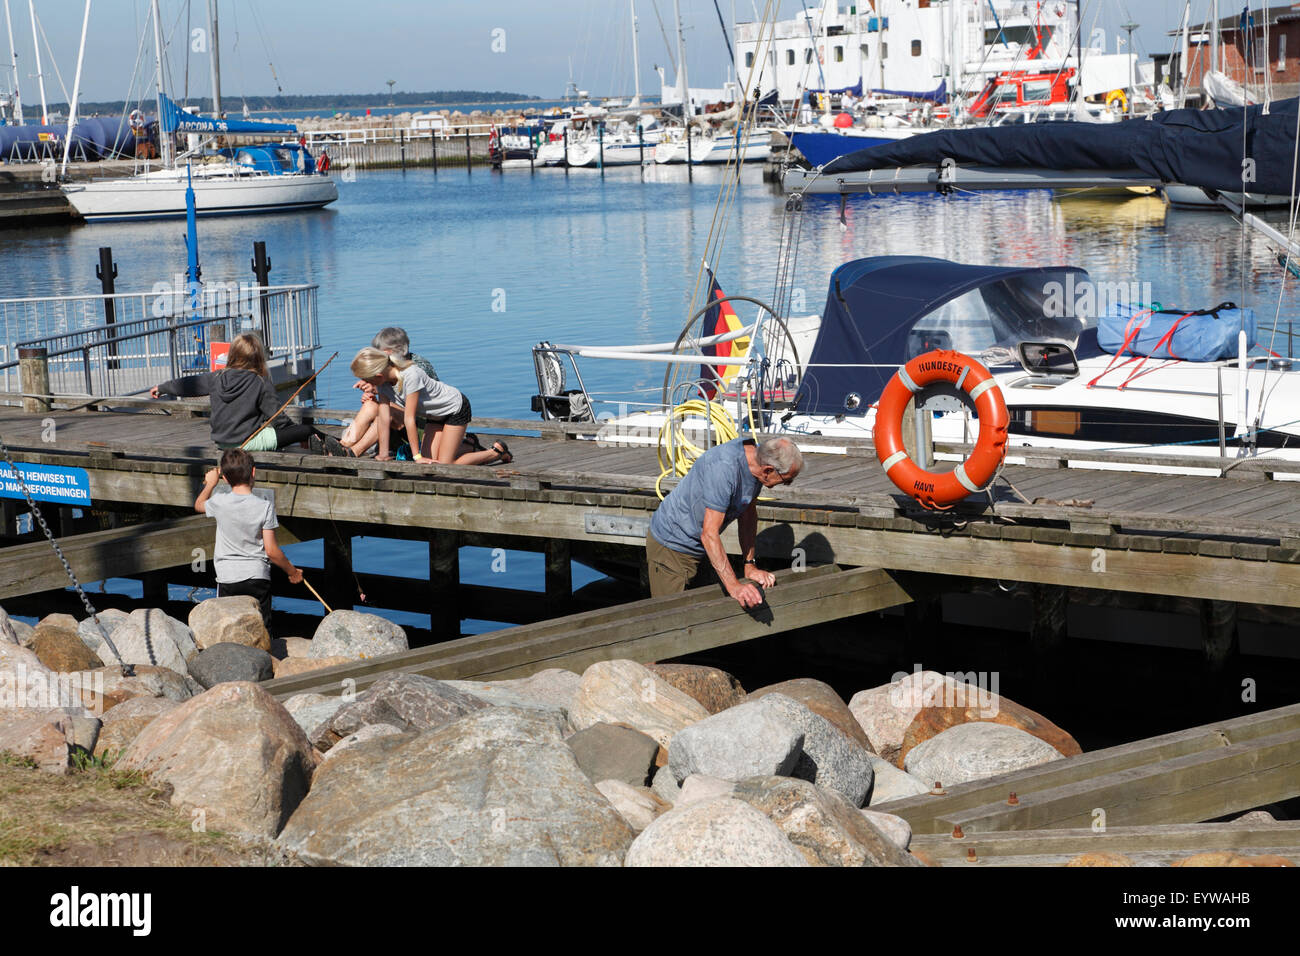 Touristenfamilie auf Segelurlaub Genießen Sie morgendliche Aktivitäten und gemütliches Ambiente im Hundested Harbour, Zealand, Dänemark. Dänische Hygge. Steg, Brücke. Stockfoto